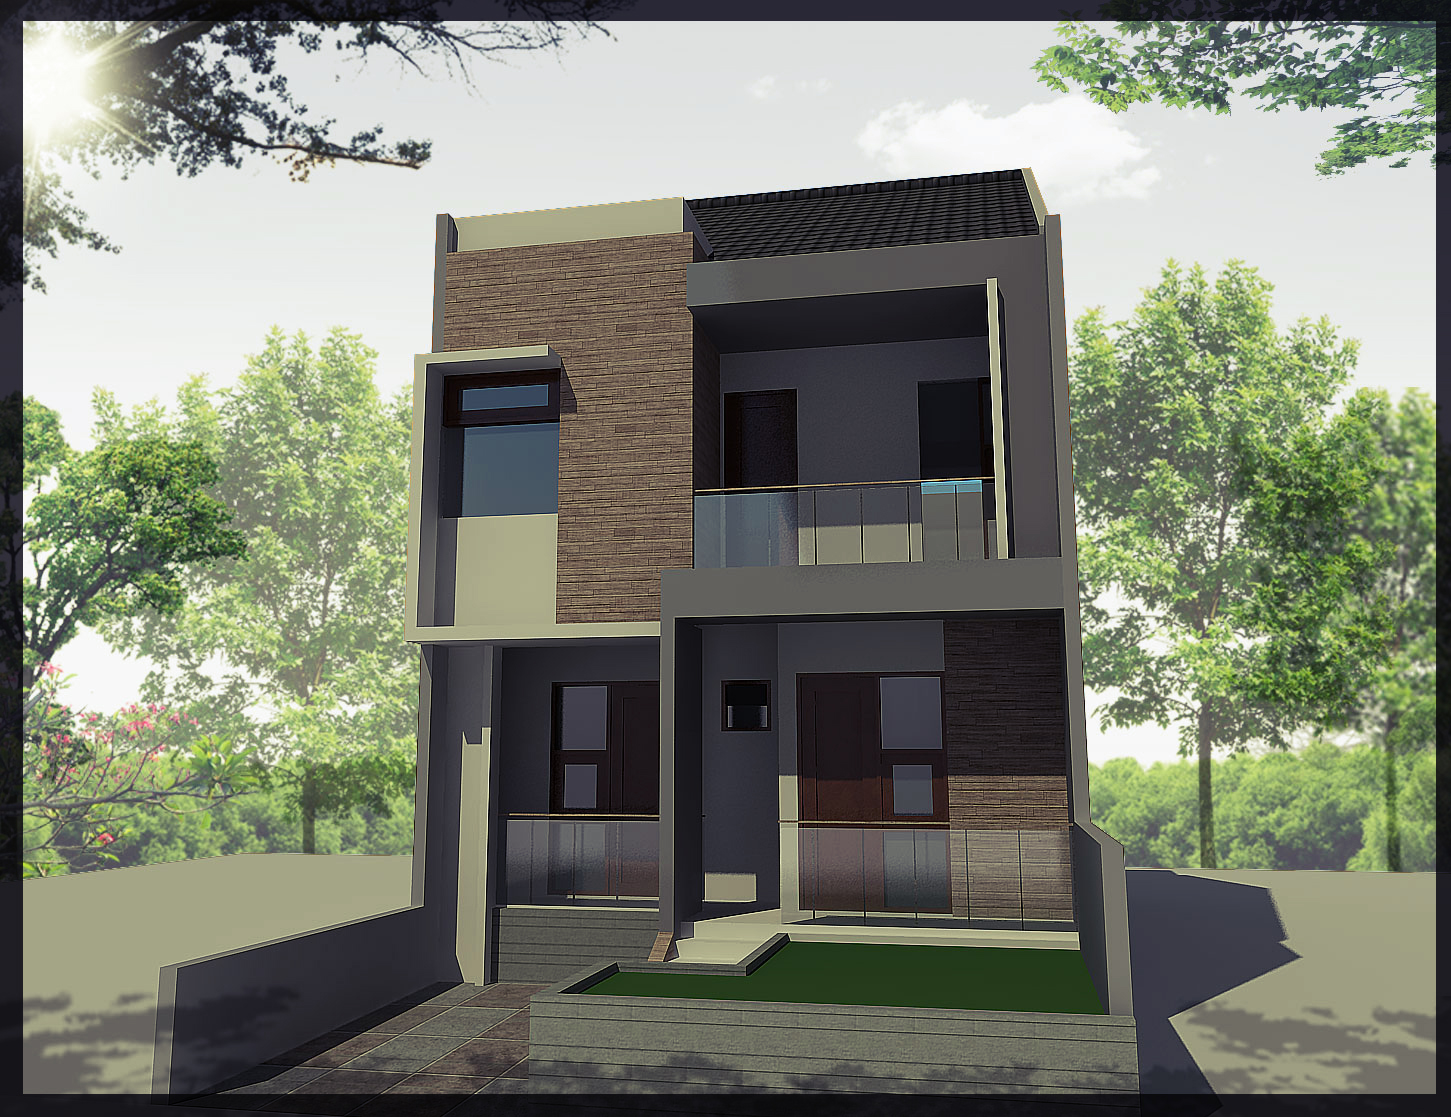 Gambar Desain Rumah Tingkat 2 Minimalis Modern Gambar Rumah